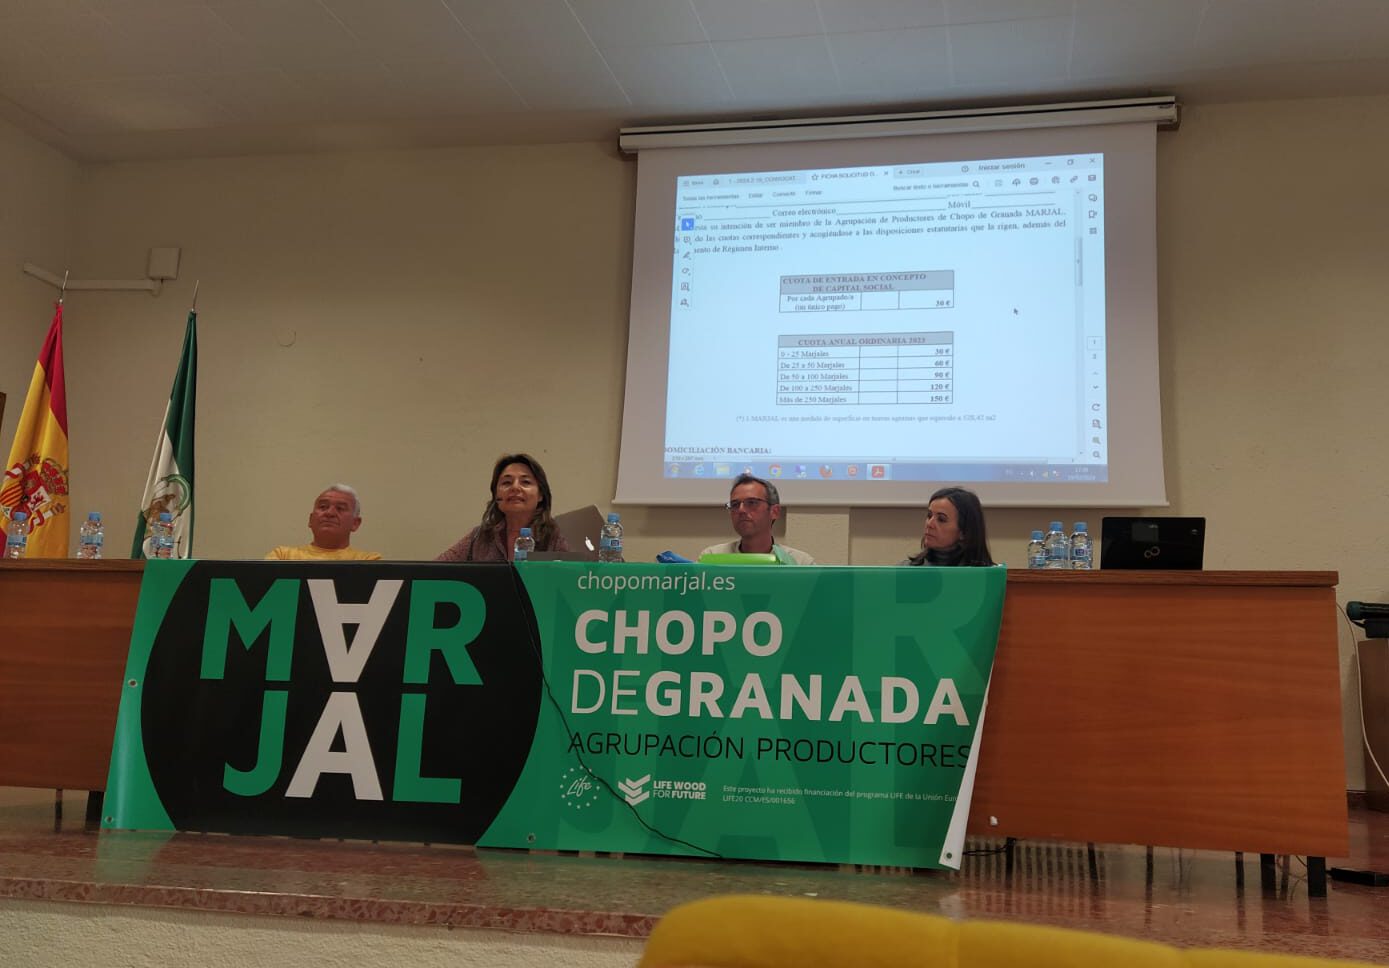 La Agrupación de Productores de Chopo de Granada Marjal suma ya cien socios y más de 1.400 hectáreas de cultivo